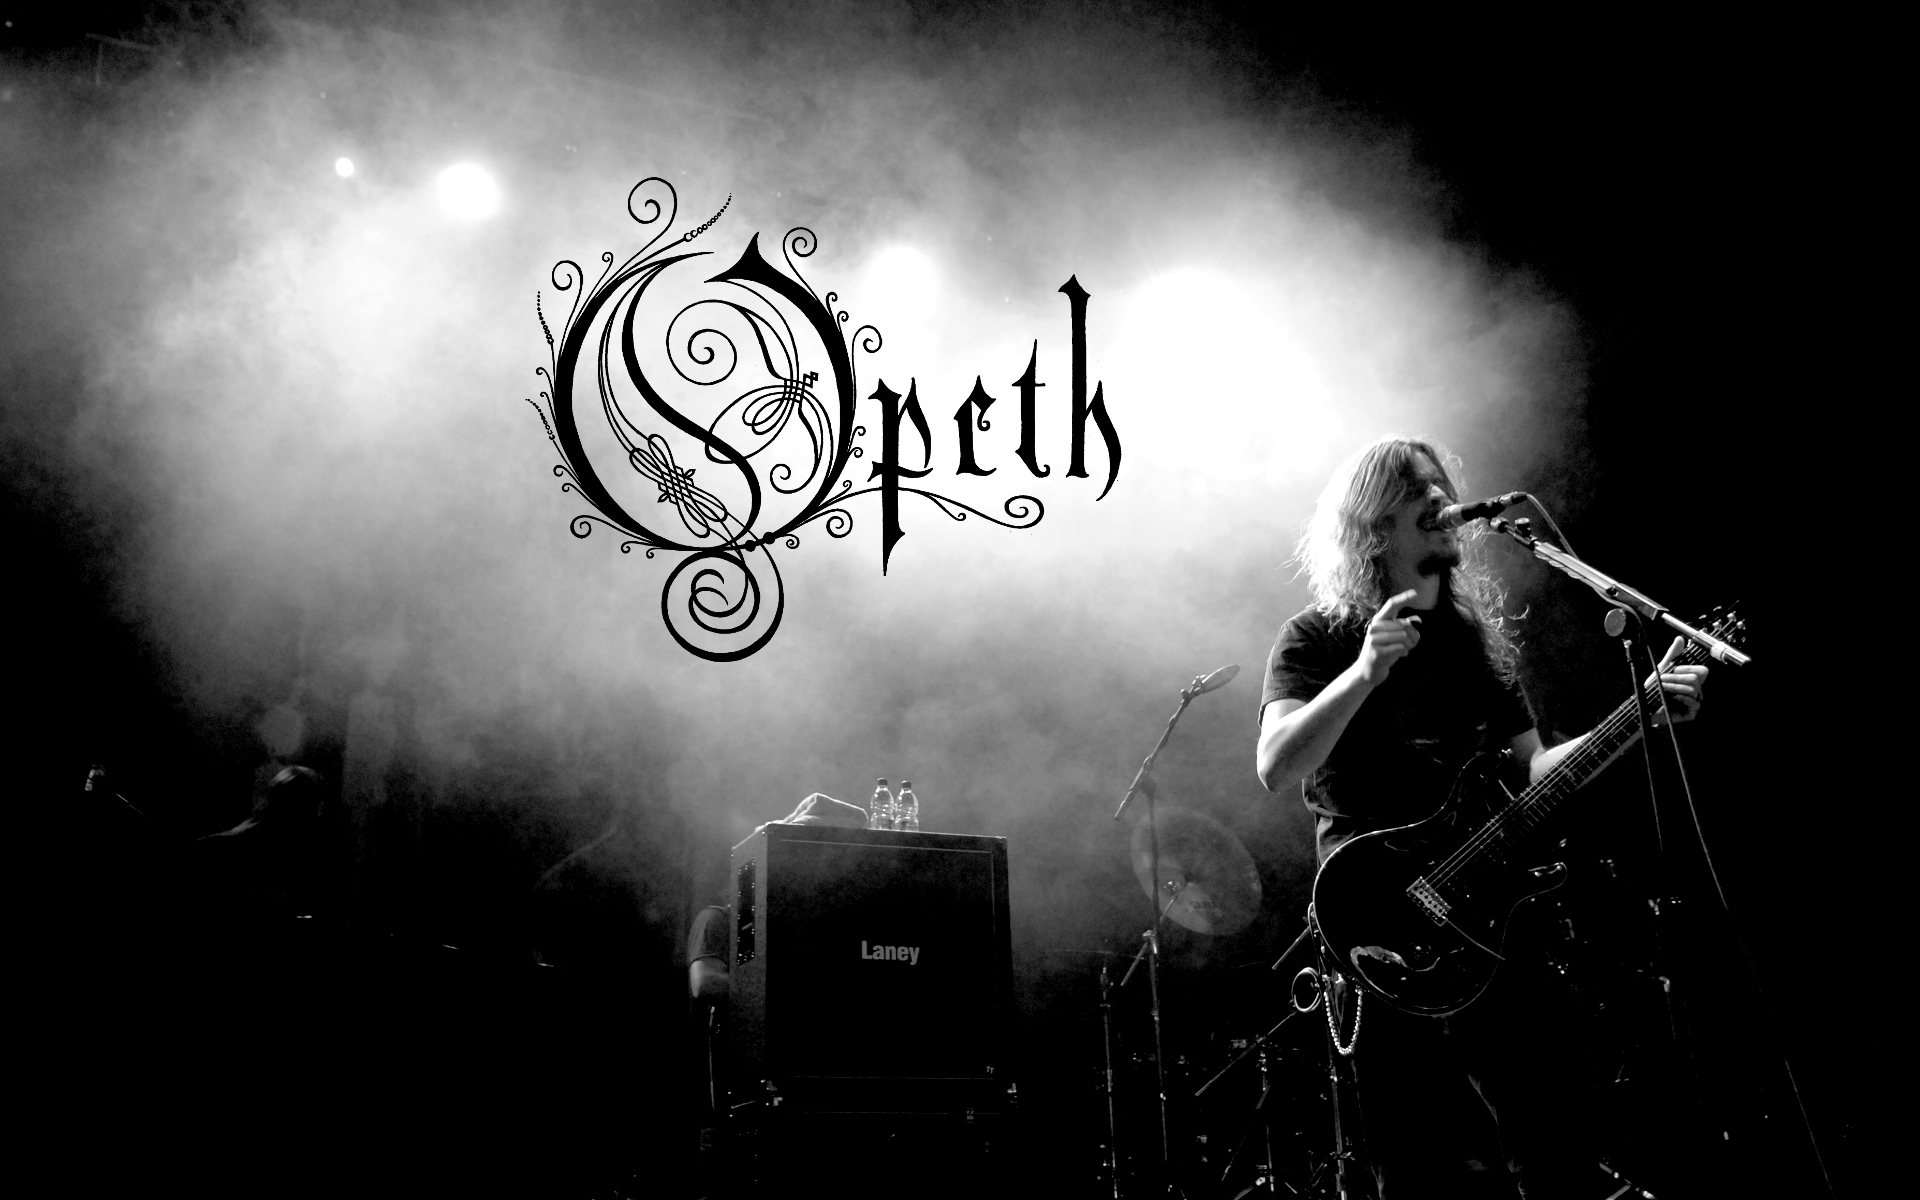 Opeth, monochrome - desktop wallpaper